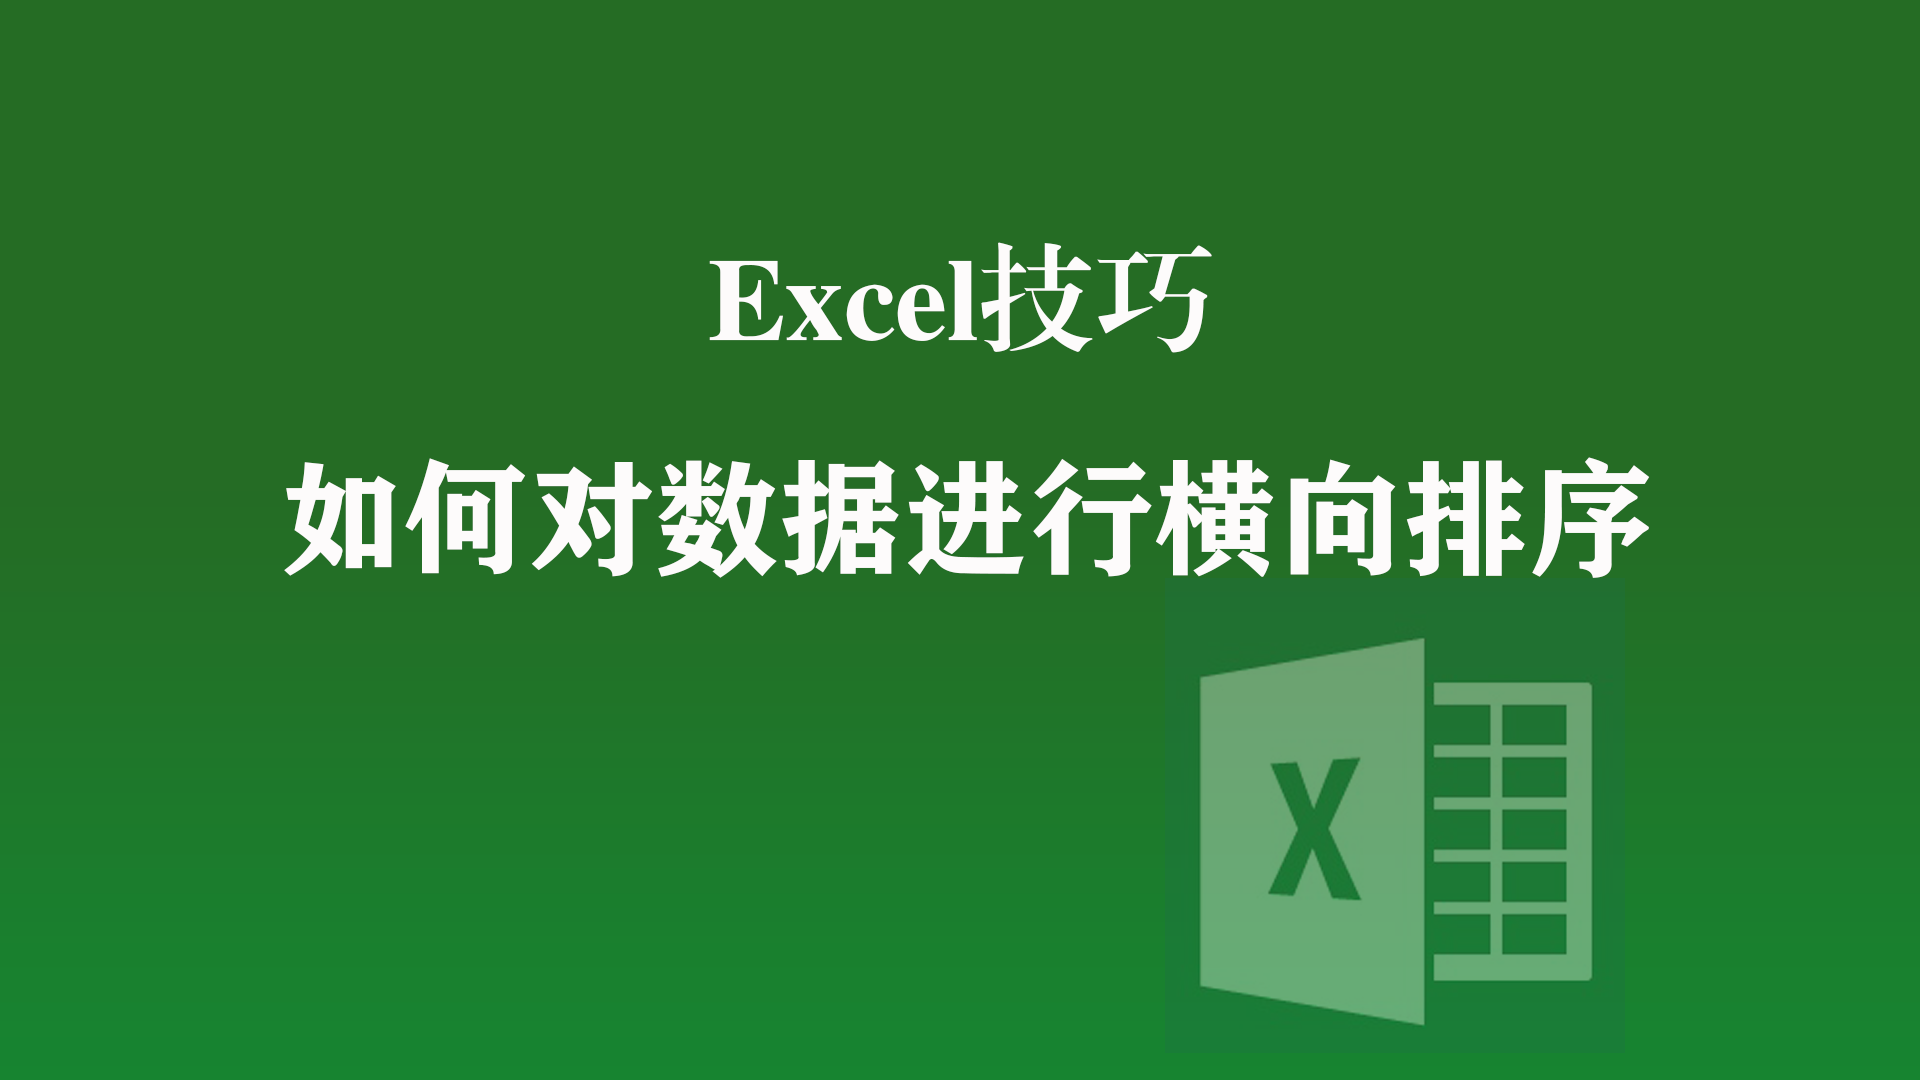 北京市|Excel技巧: 对数据进行横向排序的方法